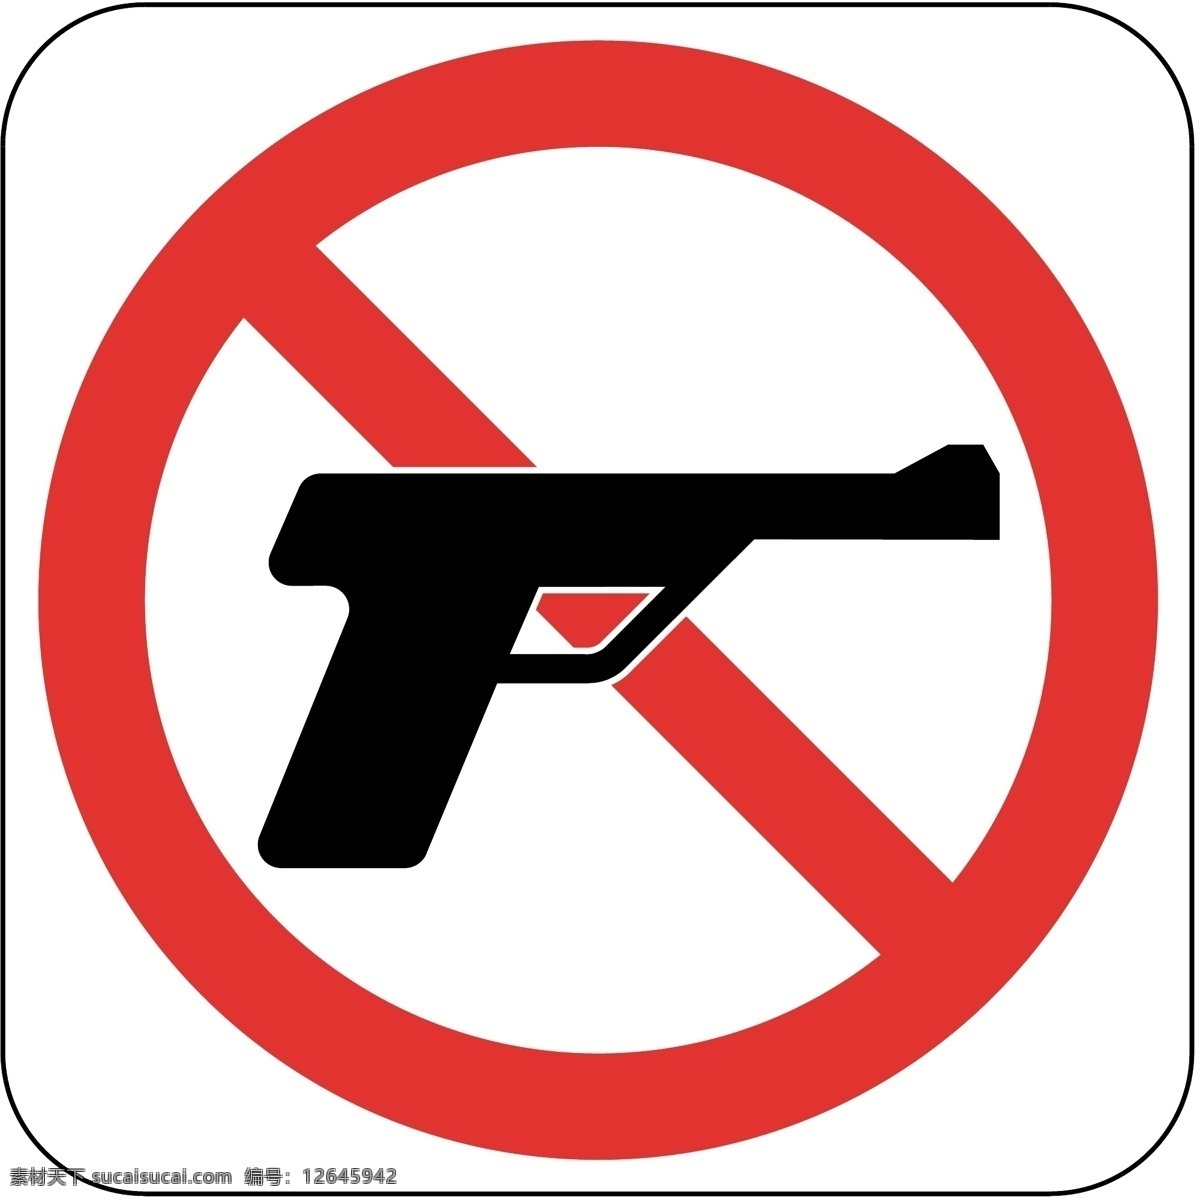 禁止 出售 玩具 枪 禁止出售 禁止玩具枪 禁止狩猎 禁止管制 危险品 安检 标志图标 公共标识标志